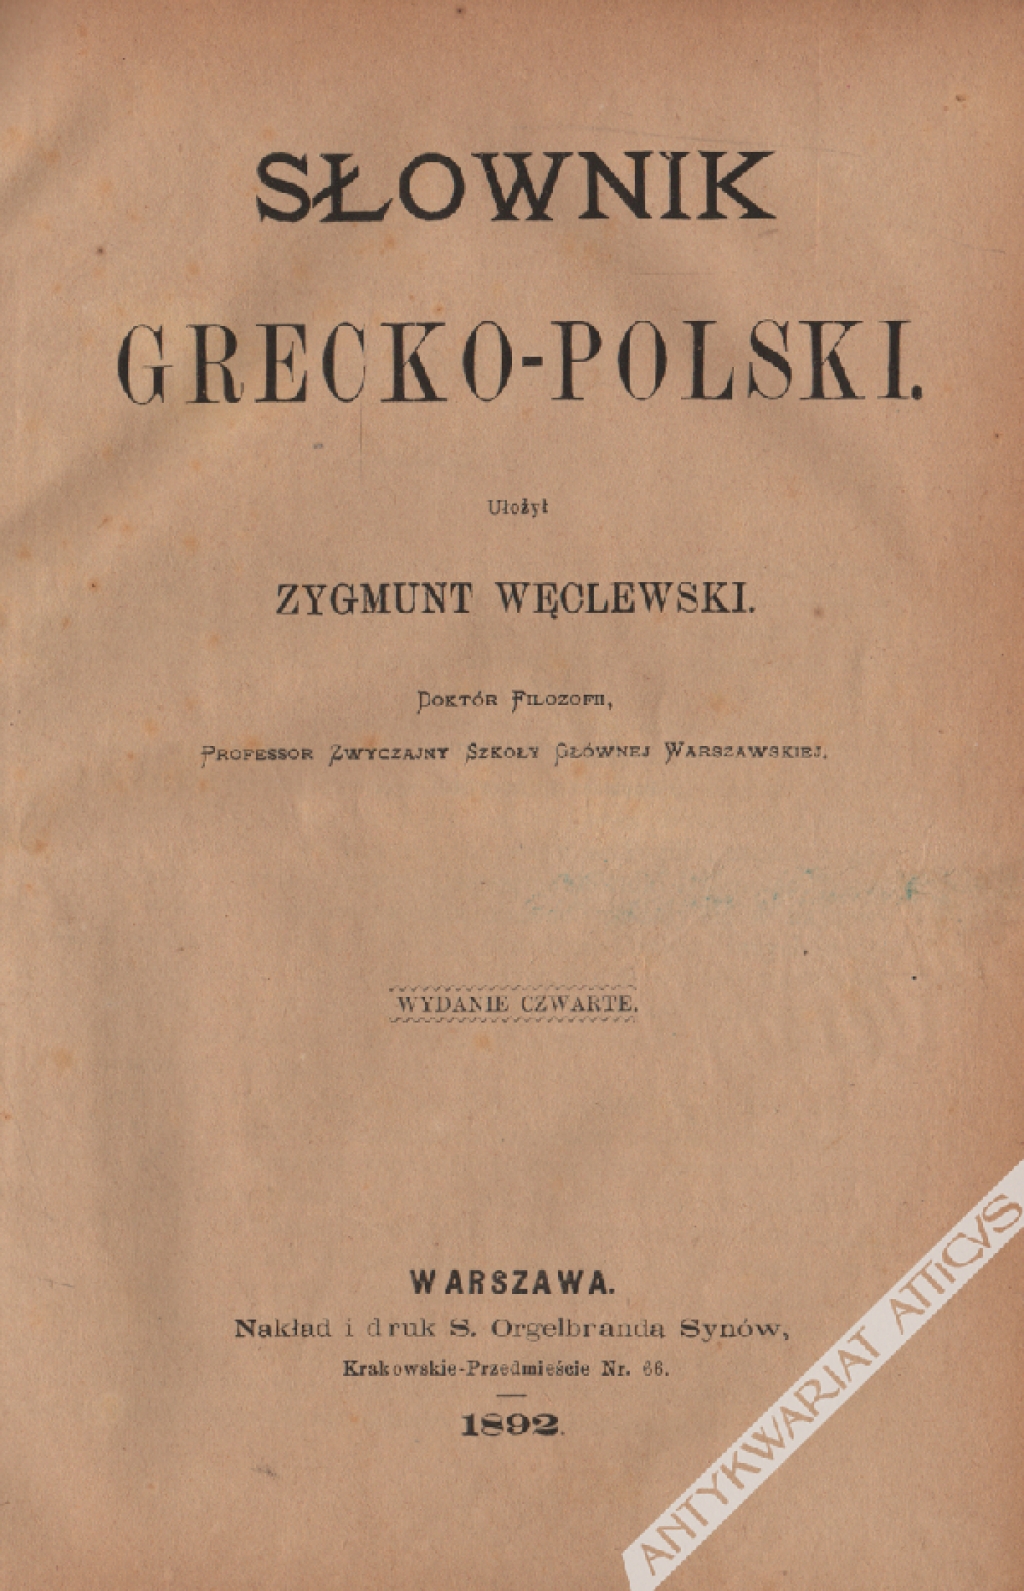 Słownik grecko-polski